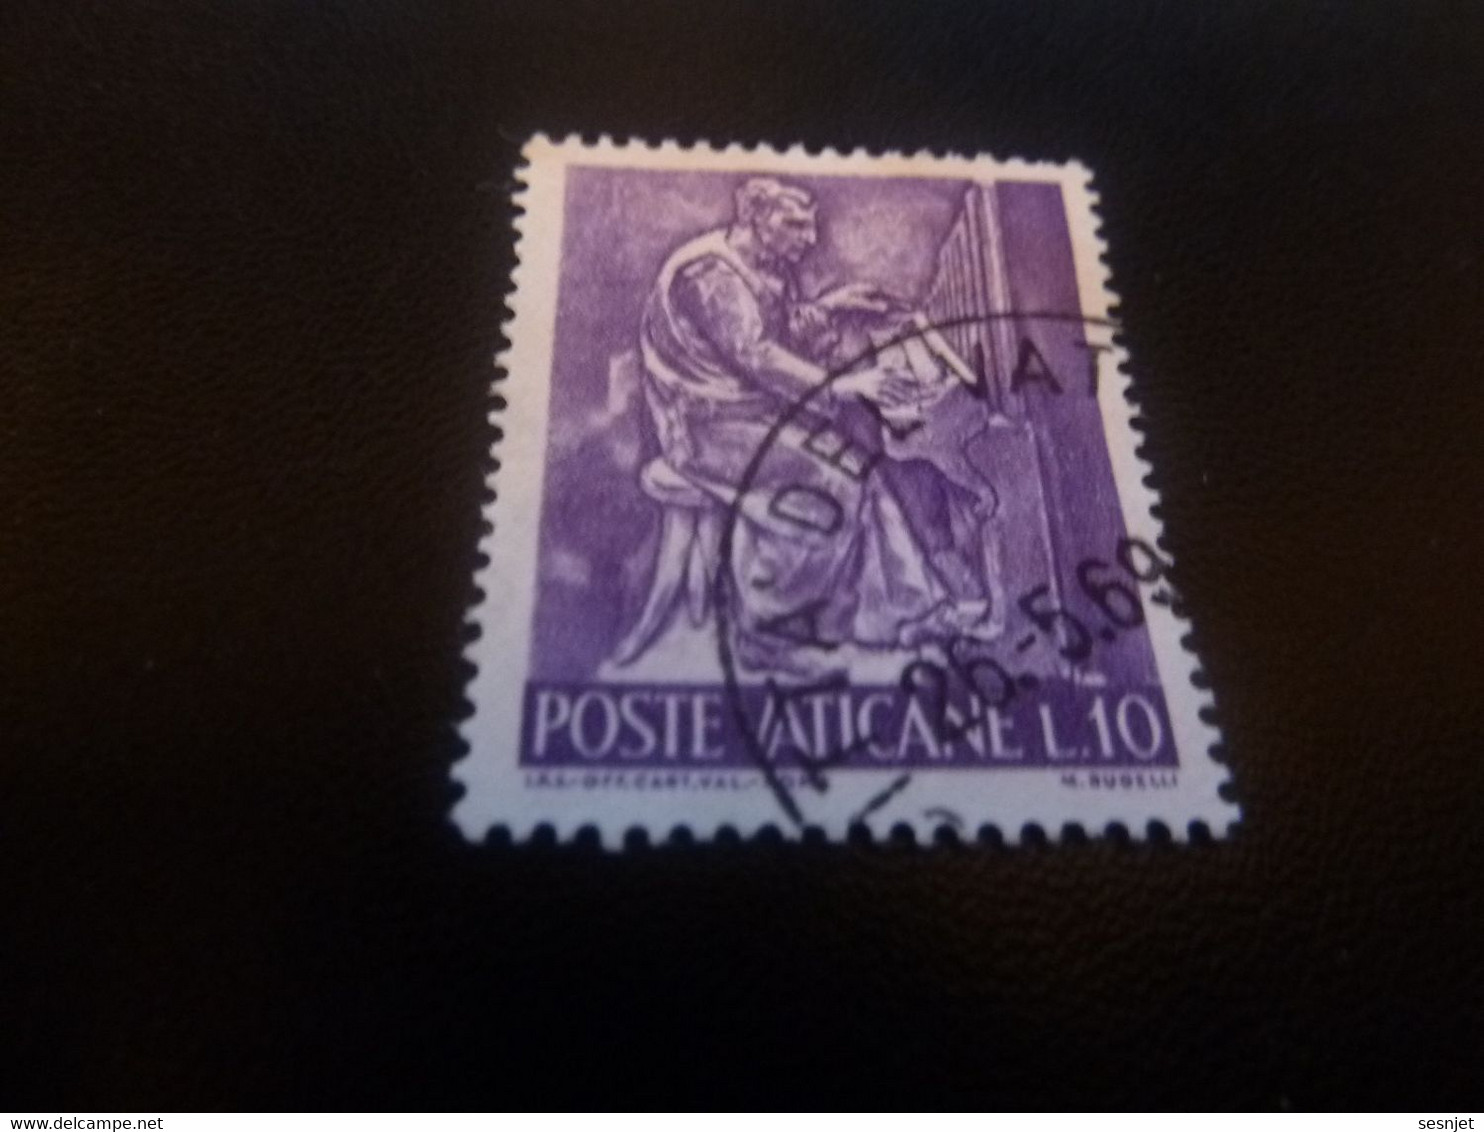 Poste Vaticane - J.P.S Off Cart Val Roma - M. Rudelli - Val L.10 - Lilas Foncé - Oblitéré - Année 1969 - - Oblitérés